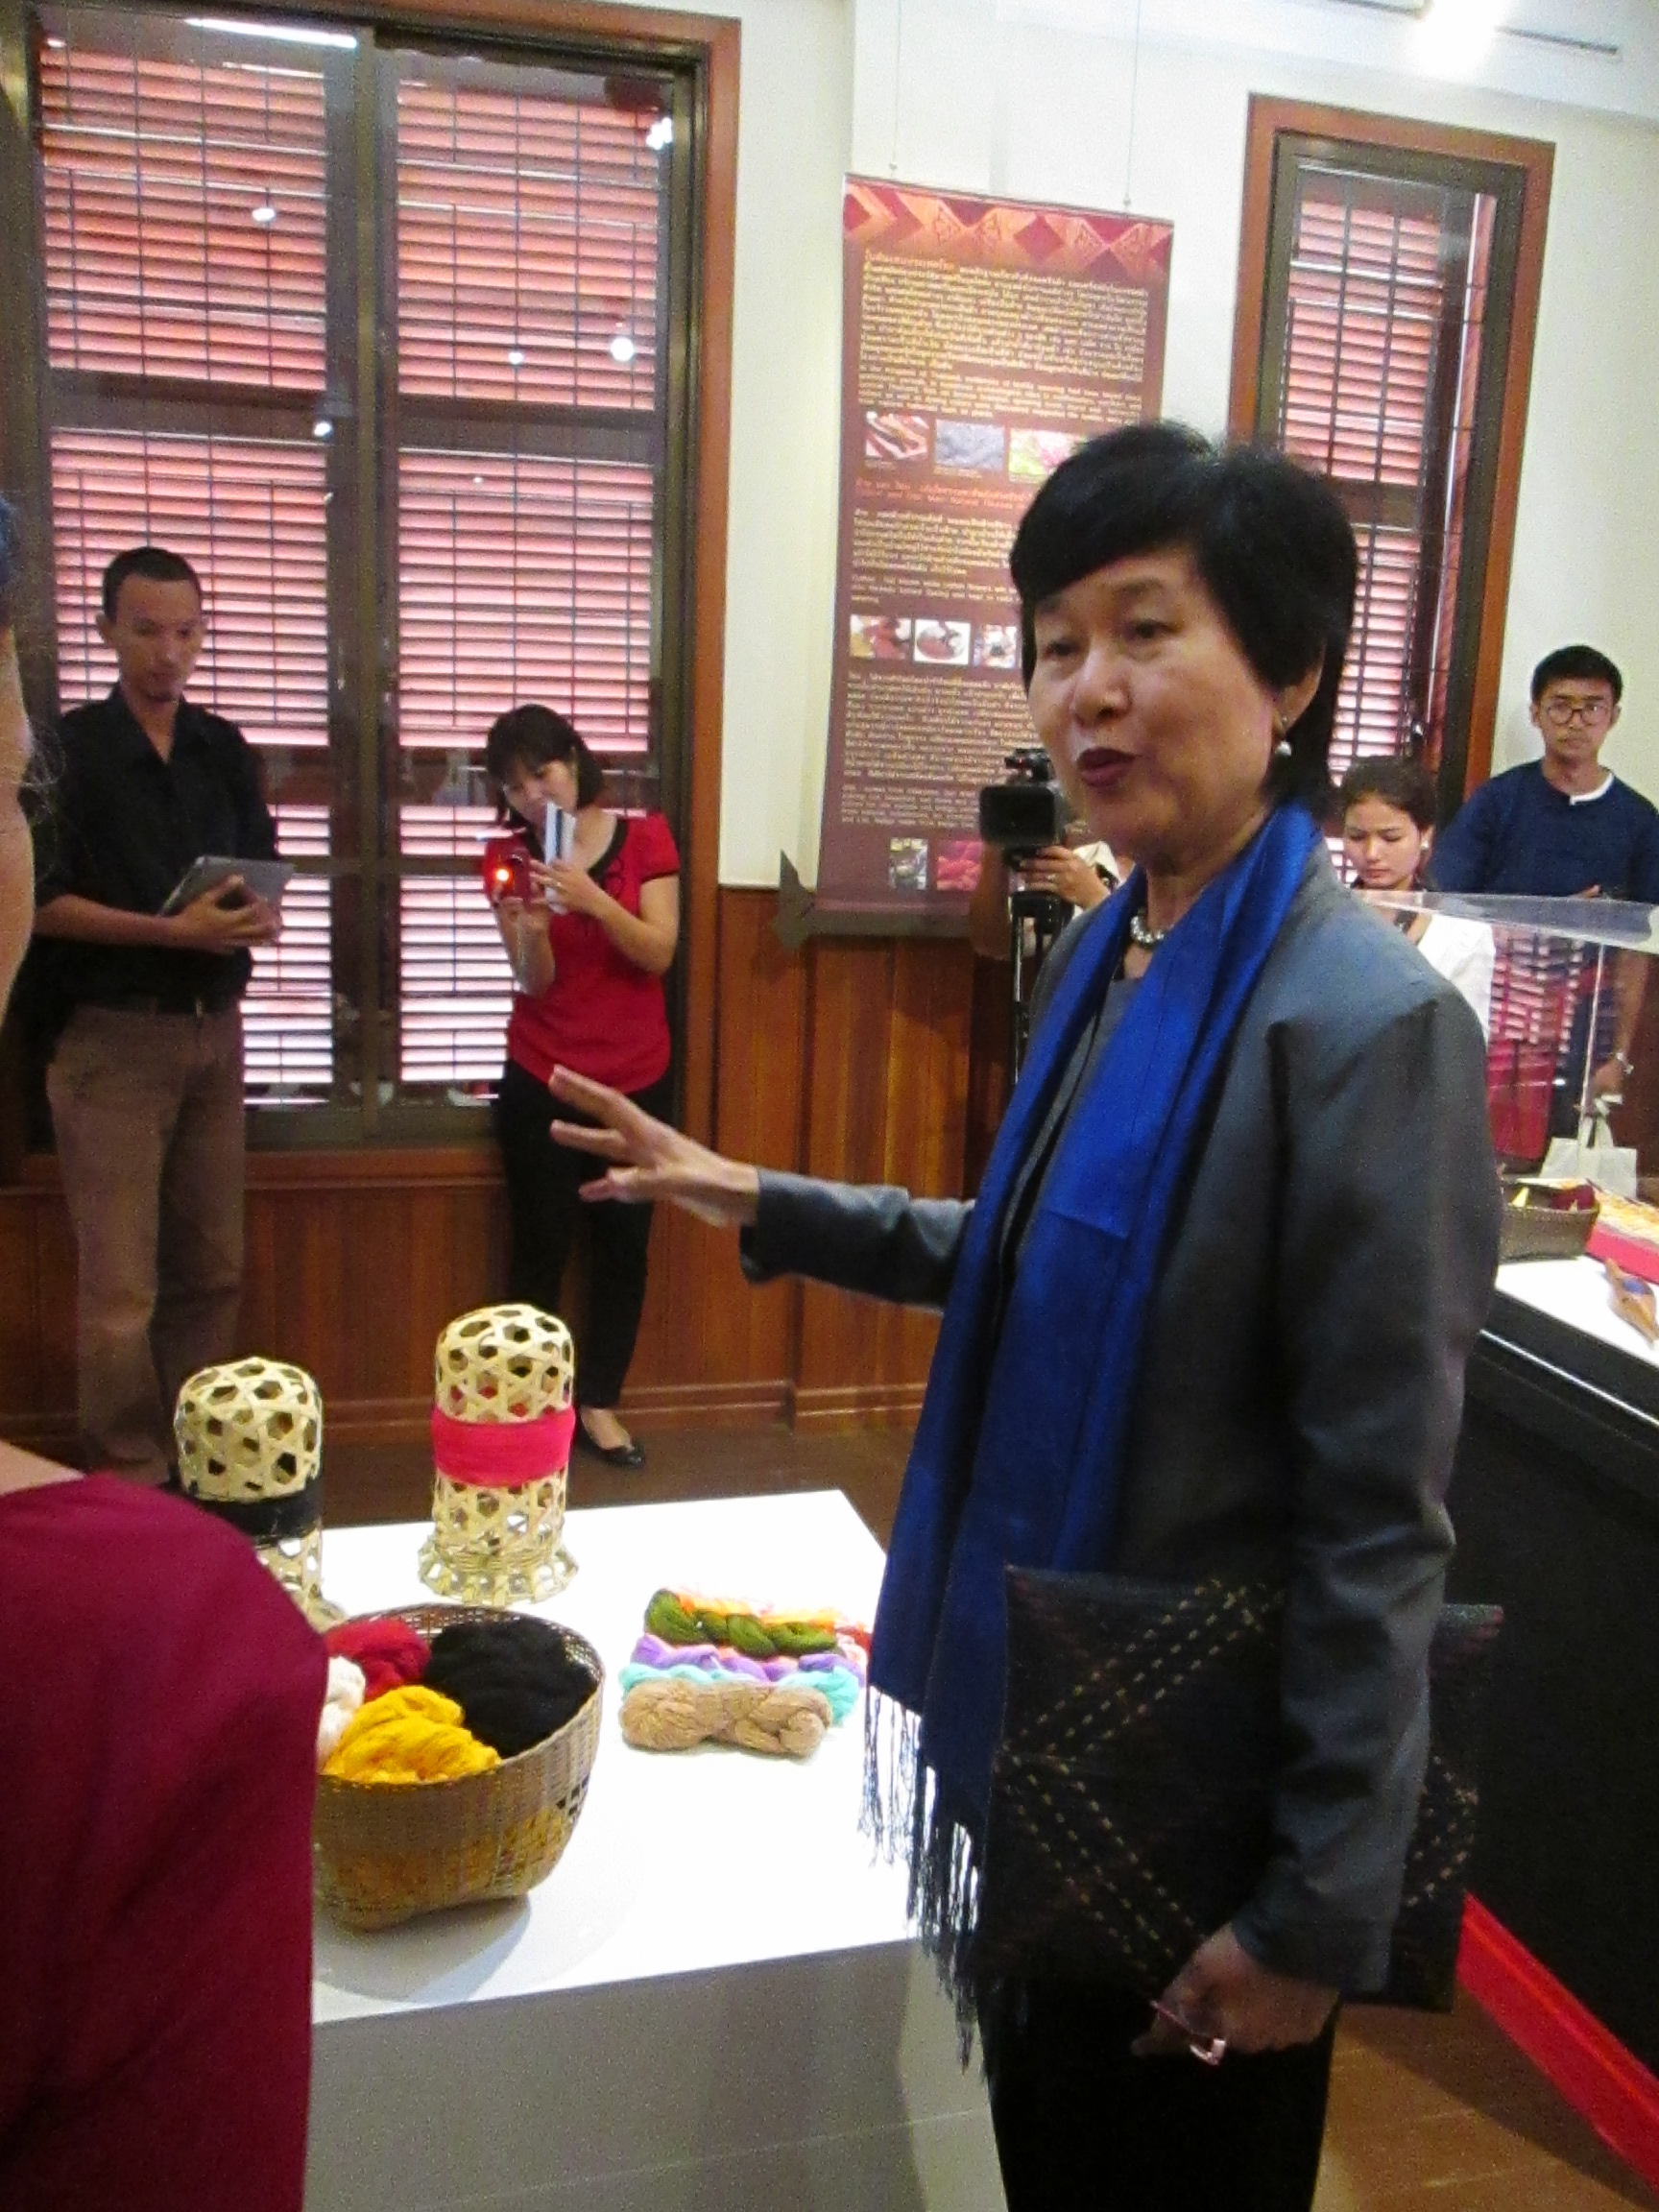 รายงานการเดินทางไปราชการ ณ ราชอาณาจักรกัมพูชา ระหว่างวันที่ 28 – 30 กันยายน 2557 โครงการประชุมคระกรรมการบริหารพิพิธภัณฑ์สิ่งทอดั้งเดิมของเอเชีย ครั้งที่2